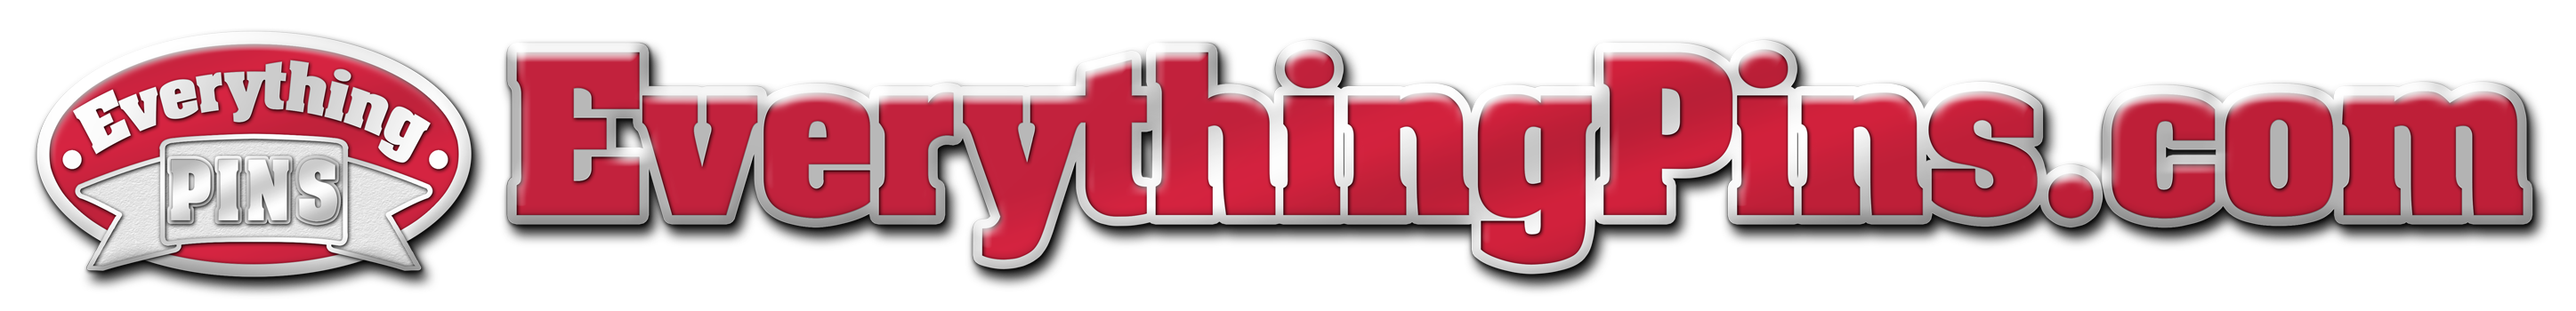 EverythingPins.com Logo